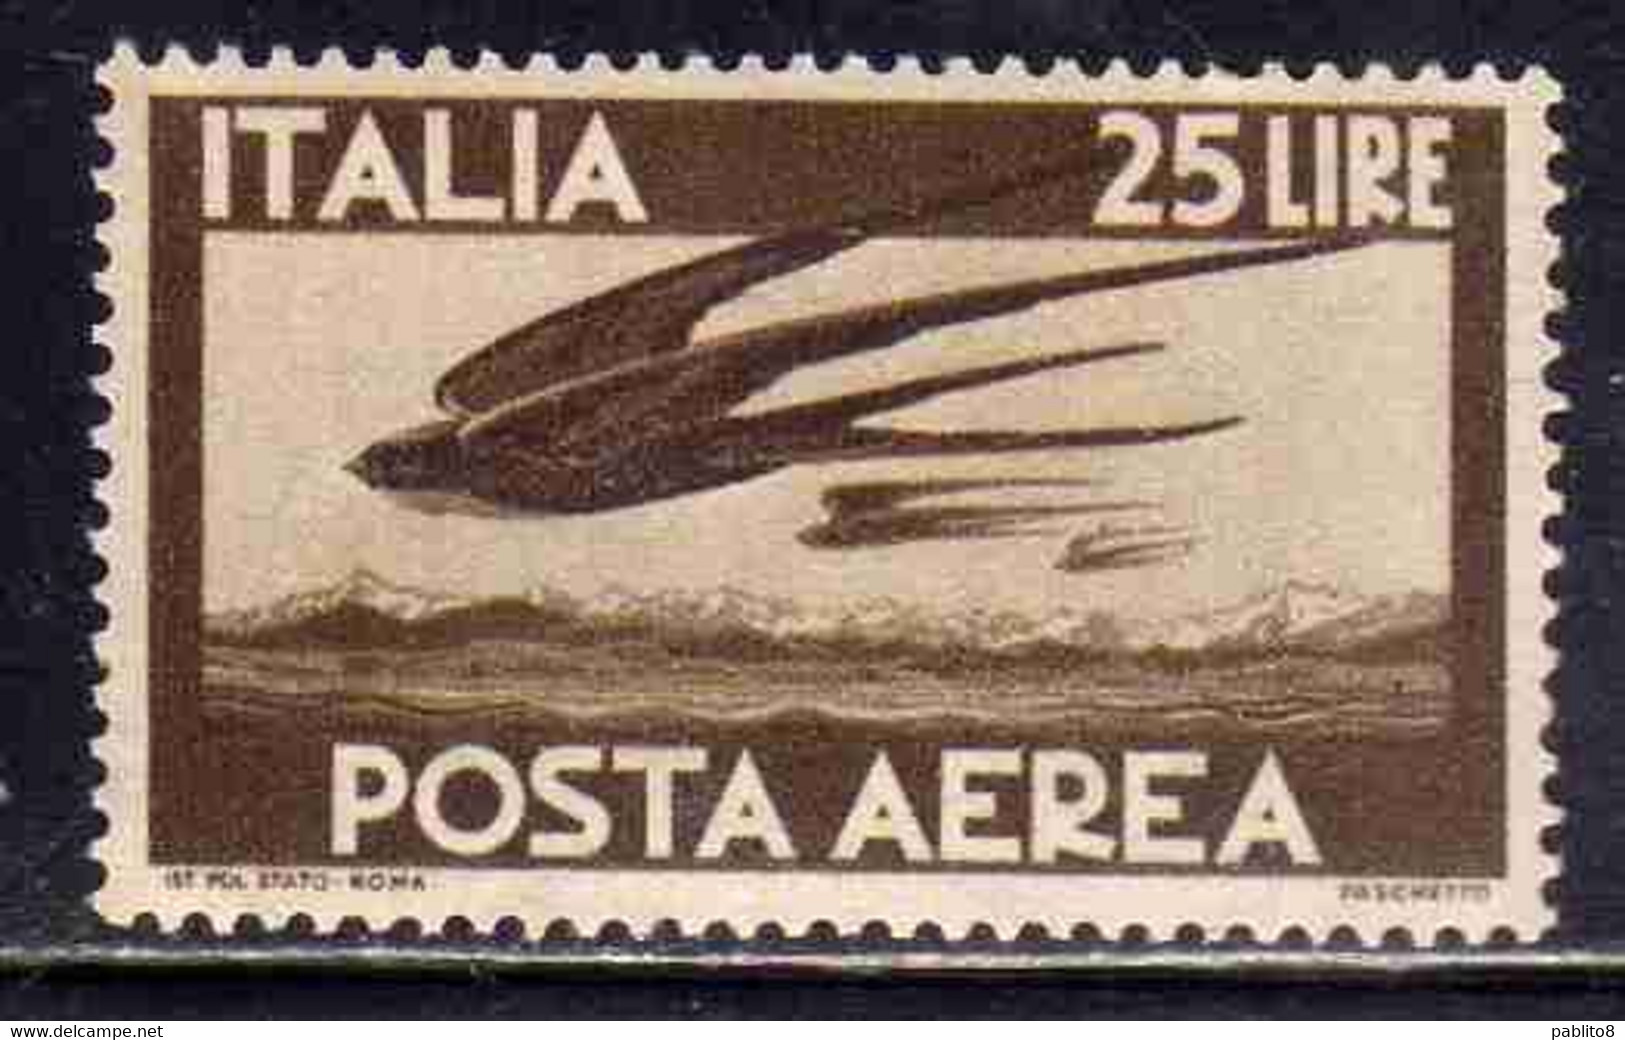 ITALY REPUBLIC ITALIA REPUBBLICA 1947 1955 DEMOCRATICA POSTA AEREA AIR MAIL COLORE CAMBIATO LIRE 25 BRUNO MNH - Poste Aérienne